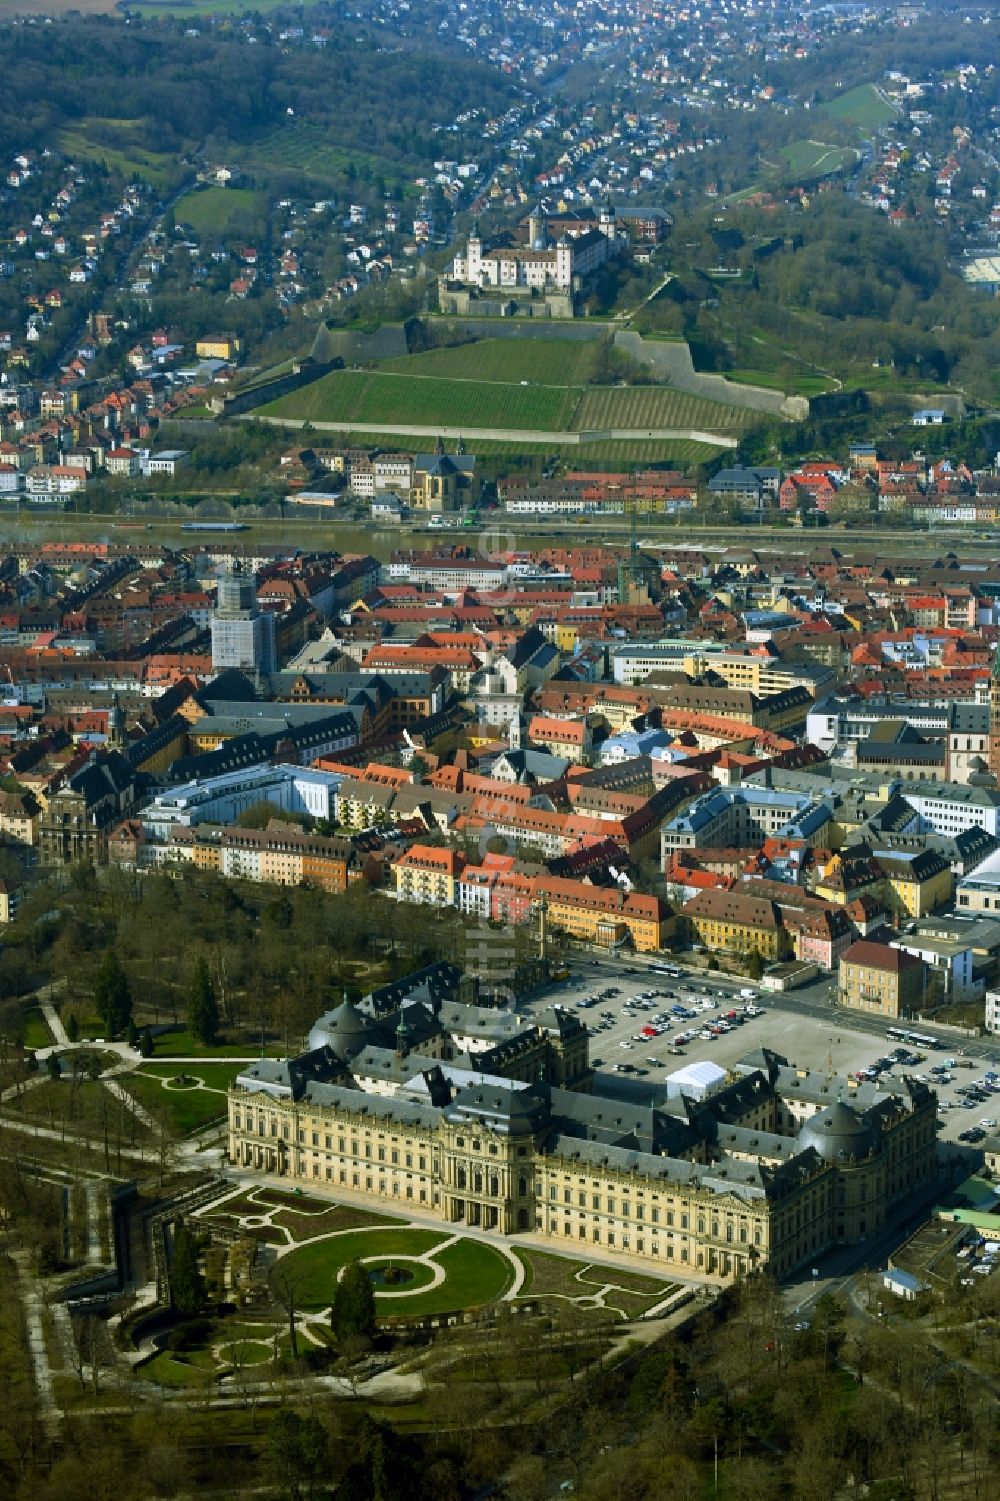 Luftbild Würzburg - Historische Altstadt mit Residenz und Festung Marienberg in Würzburg im Bundesland Bayern, Deutschland